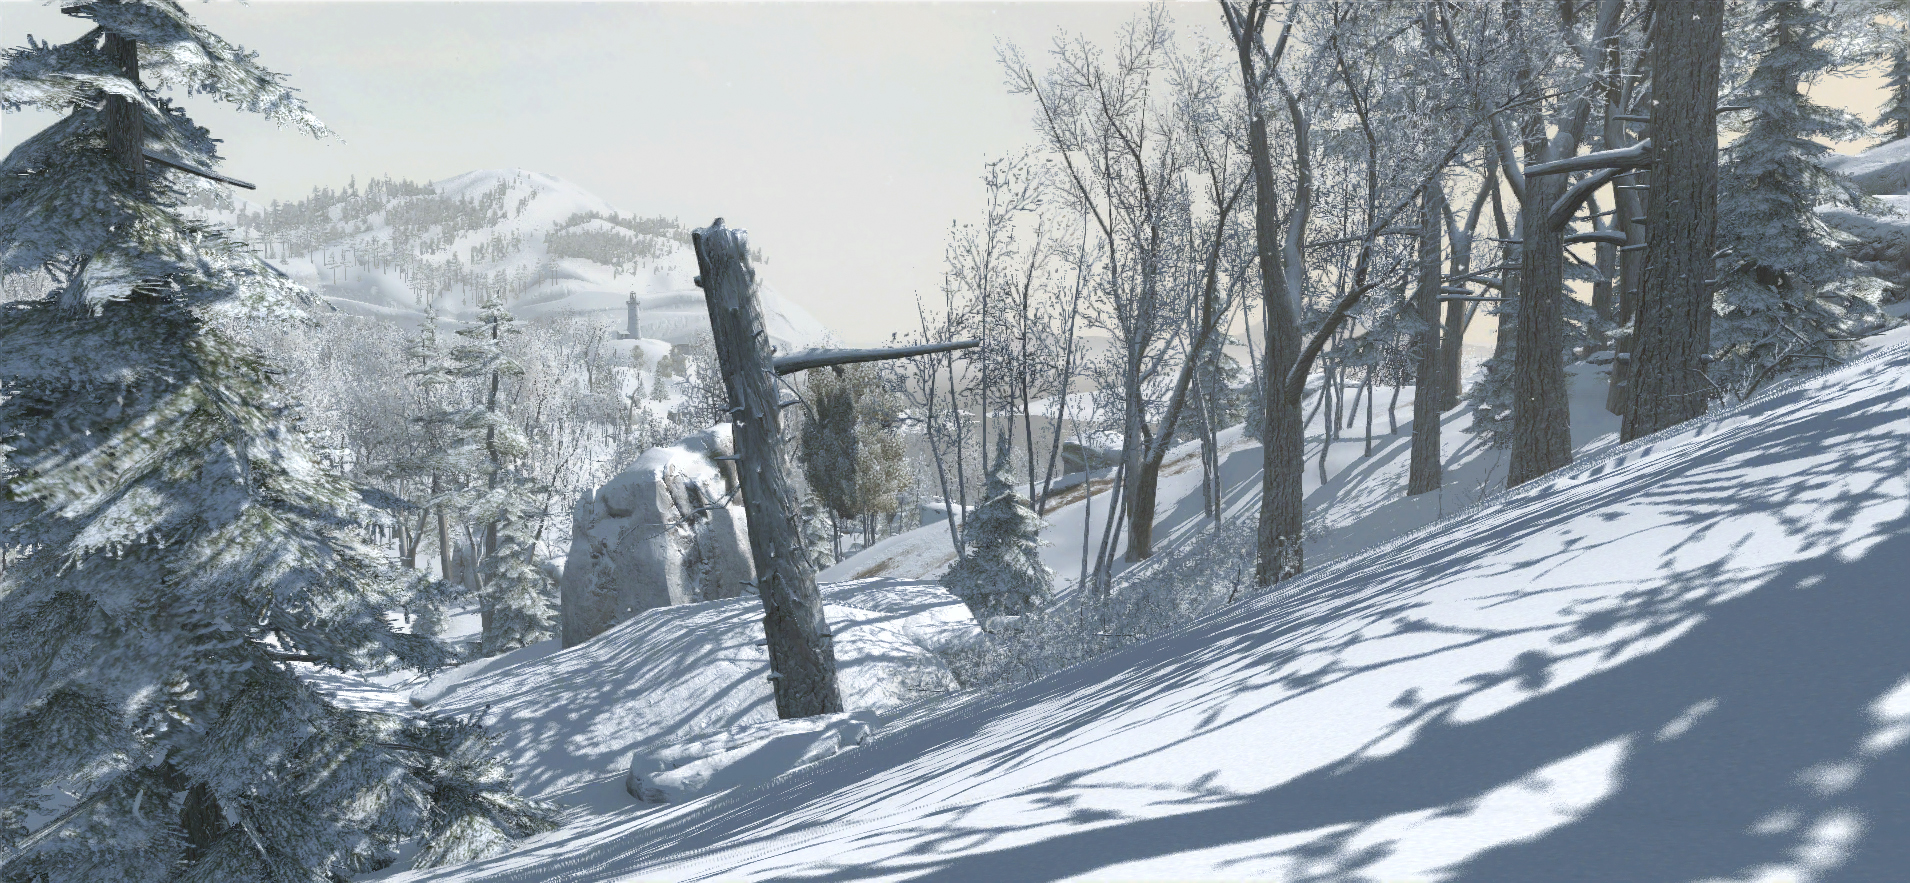 Immagine pubblicata in relazione al seguente contenuto: Assassin's Creed III Screenshots: Connor corre nei boschi innevati | Nome immagine: news17020_4.jpg